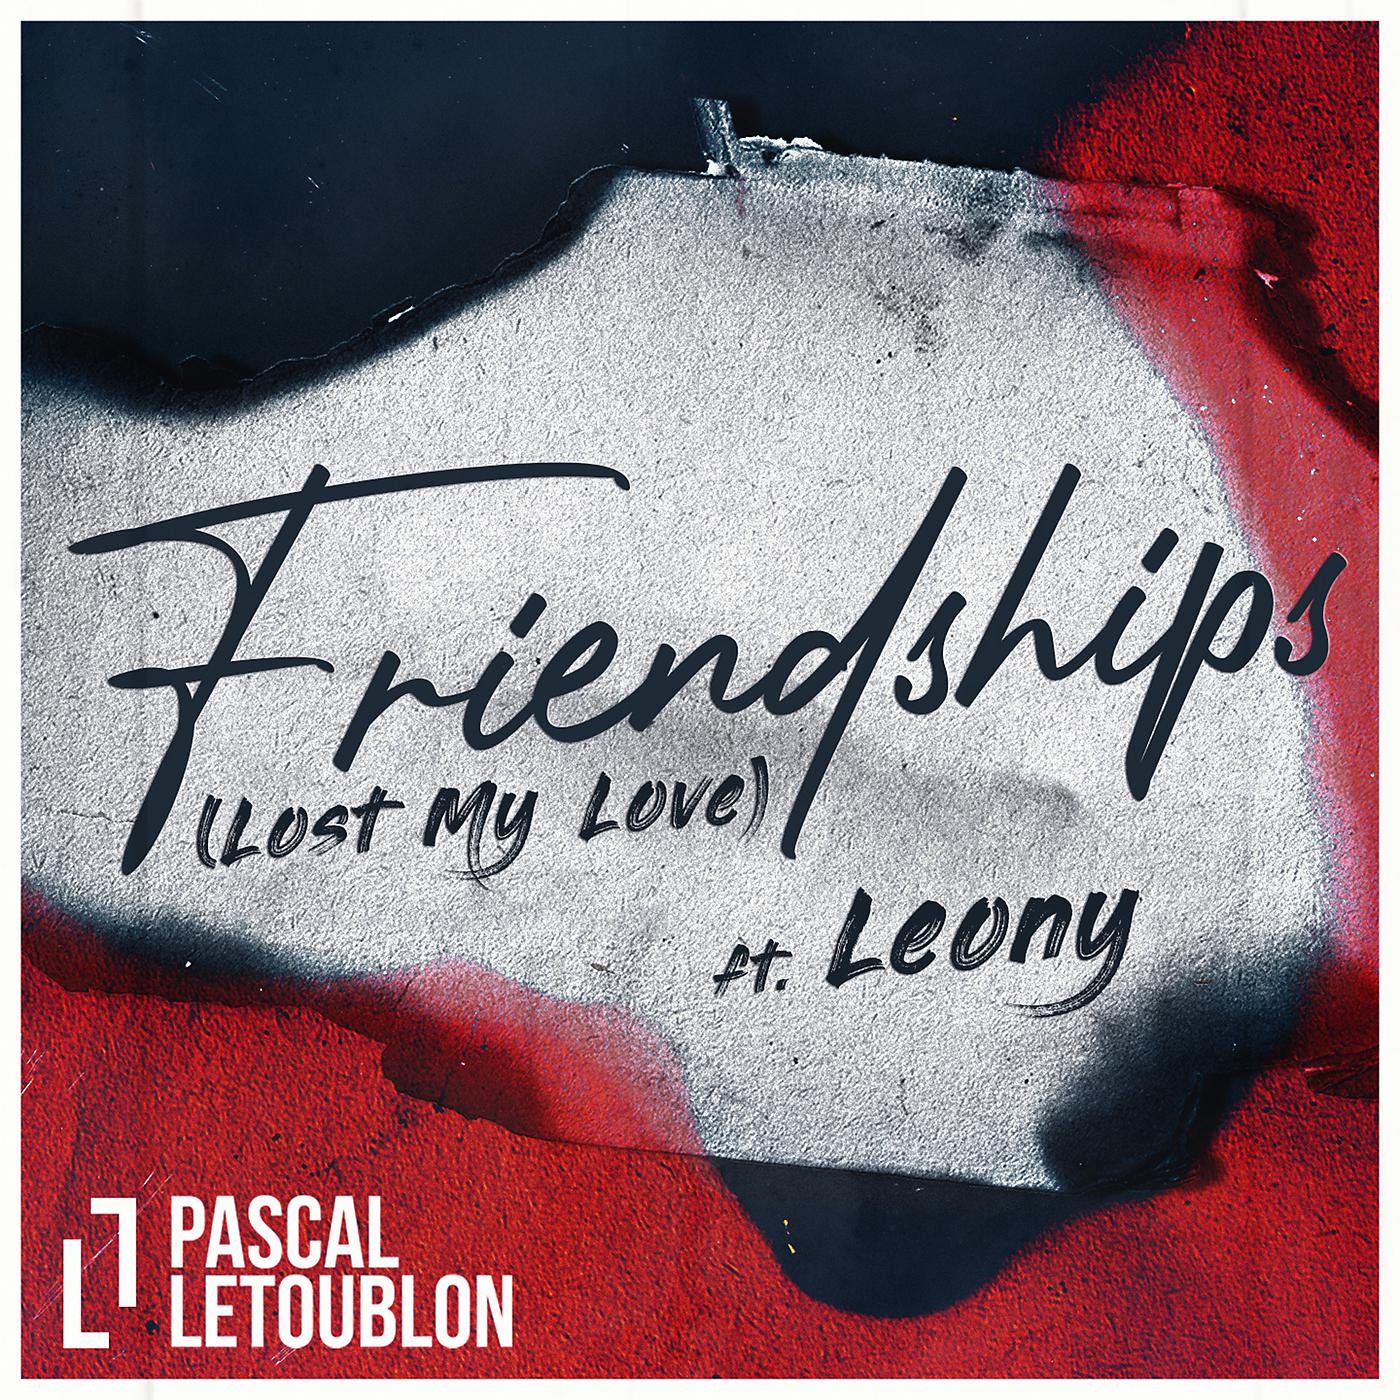 Постер альбома Friendships (Lost My Love)